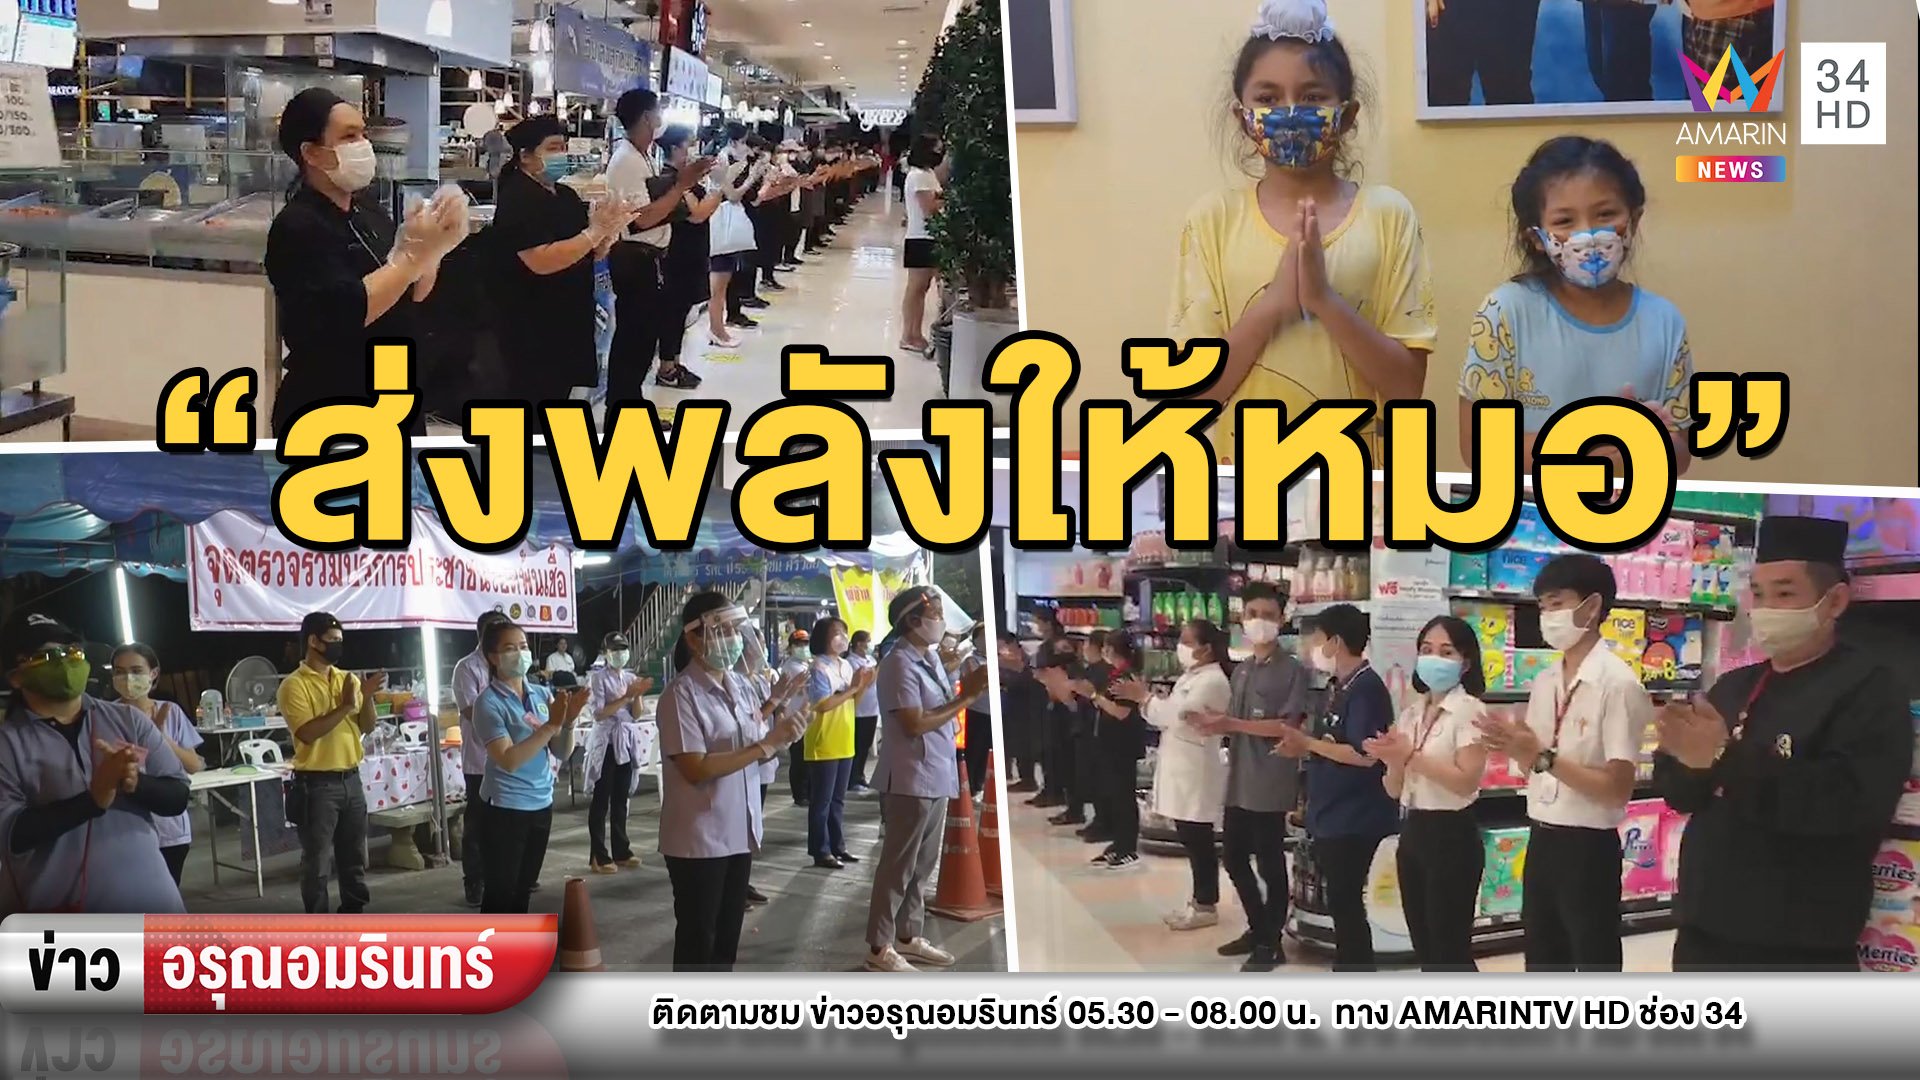 ทั่วไทยส่งกำลังใจให้หมอ-พยาบาลกับโครงการ “เสียงปรบมือคือกำลังใจ”  | ข่าวอรุณอมรินทร์ | 30 มี.ค. 63 | AMARIN TVHD34